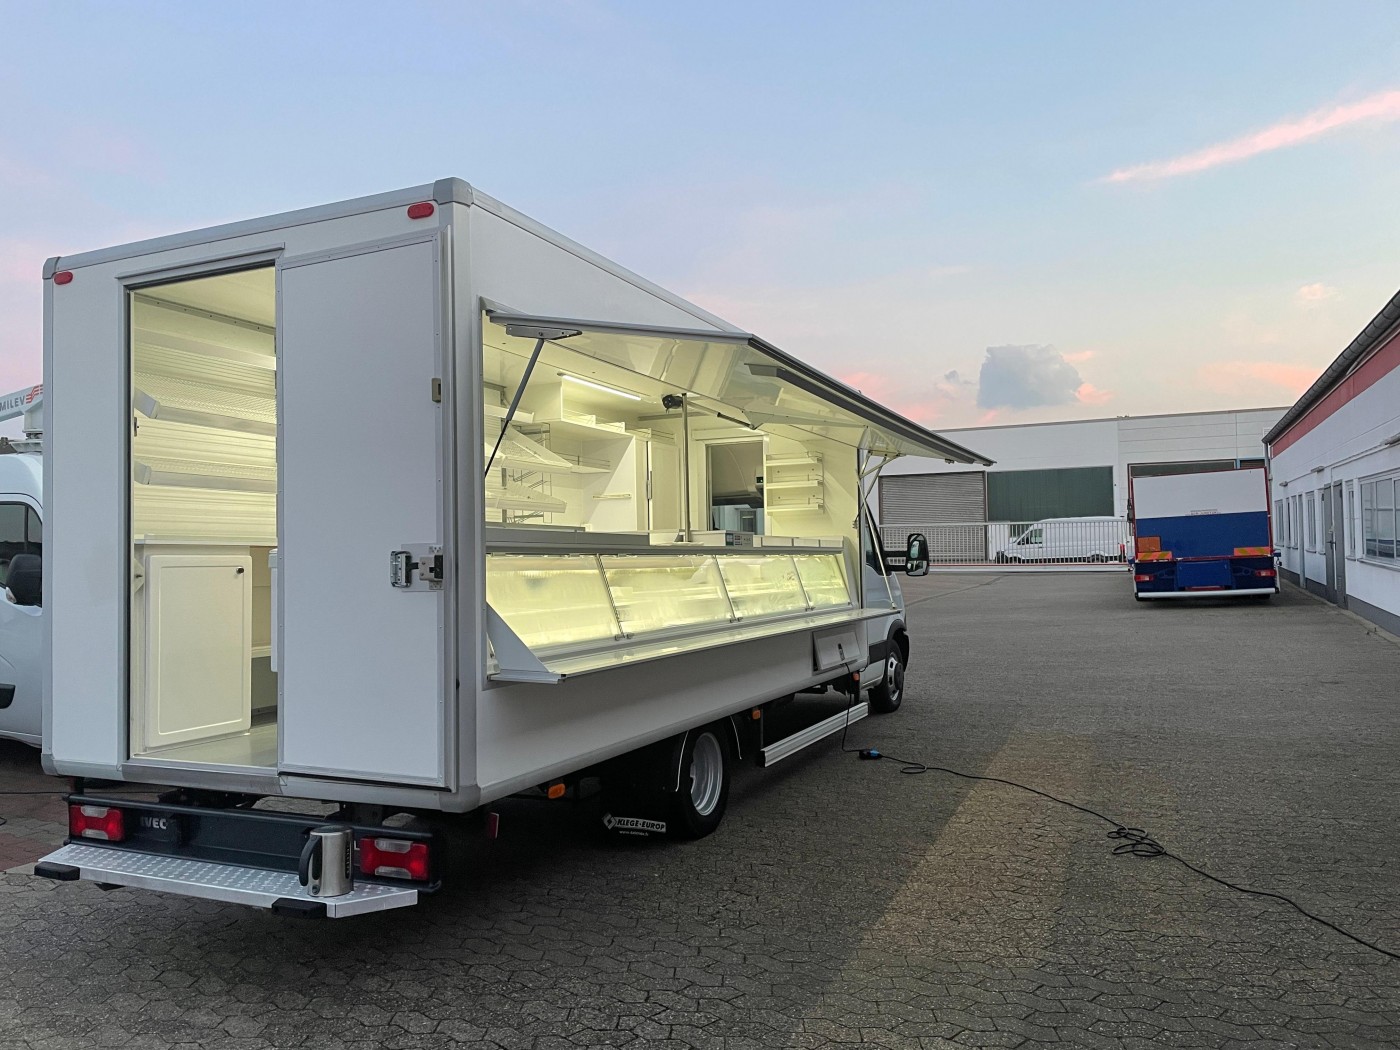  - Iveco Daily 50C15 Тонар (Киоск / ларек на колесах) с морозильными камерами / автомобиль для продажи / длинна 5м / TÜV!